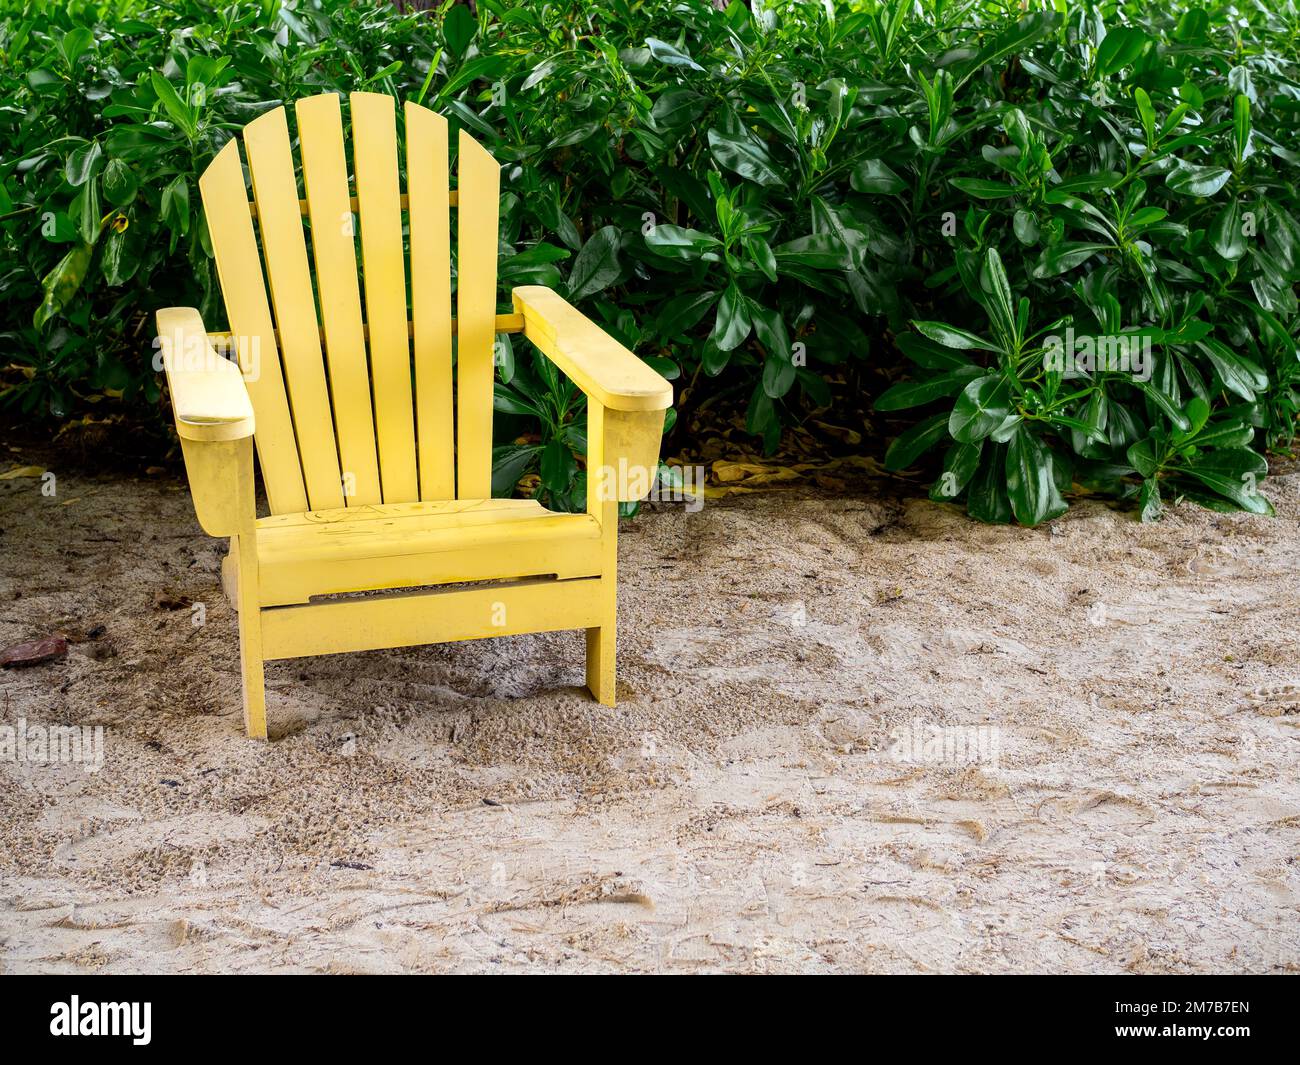 Une chaise longue en bois jaune vide sur la plage de sable sur fond de  feuilles vertes avec espace de copie. Chaise adirondack en bois couleur  jaune clair avec personne dans Photo